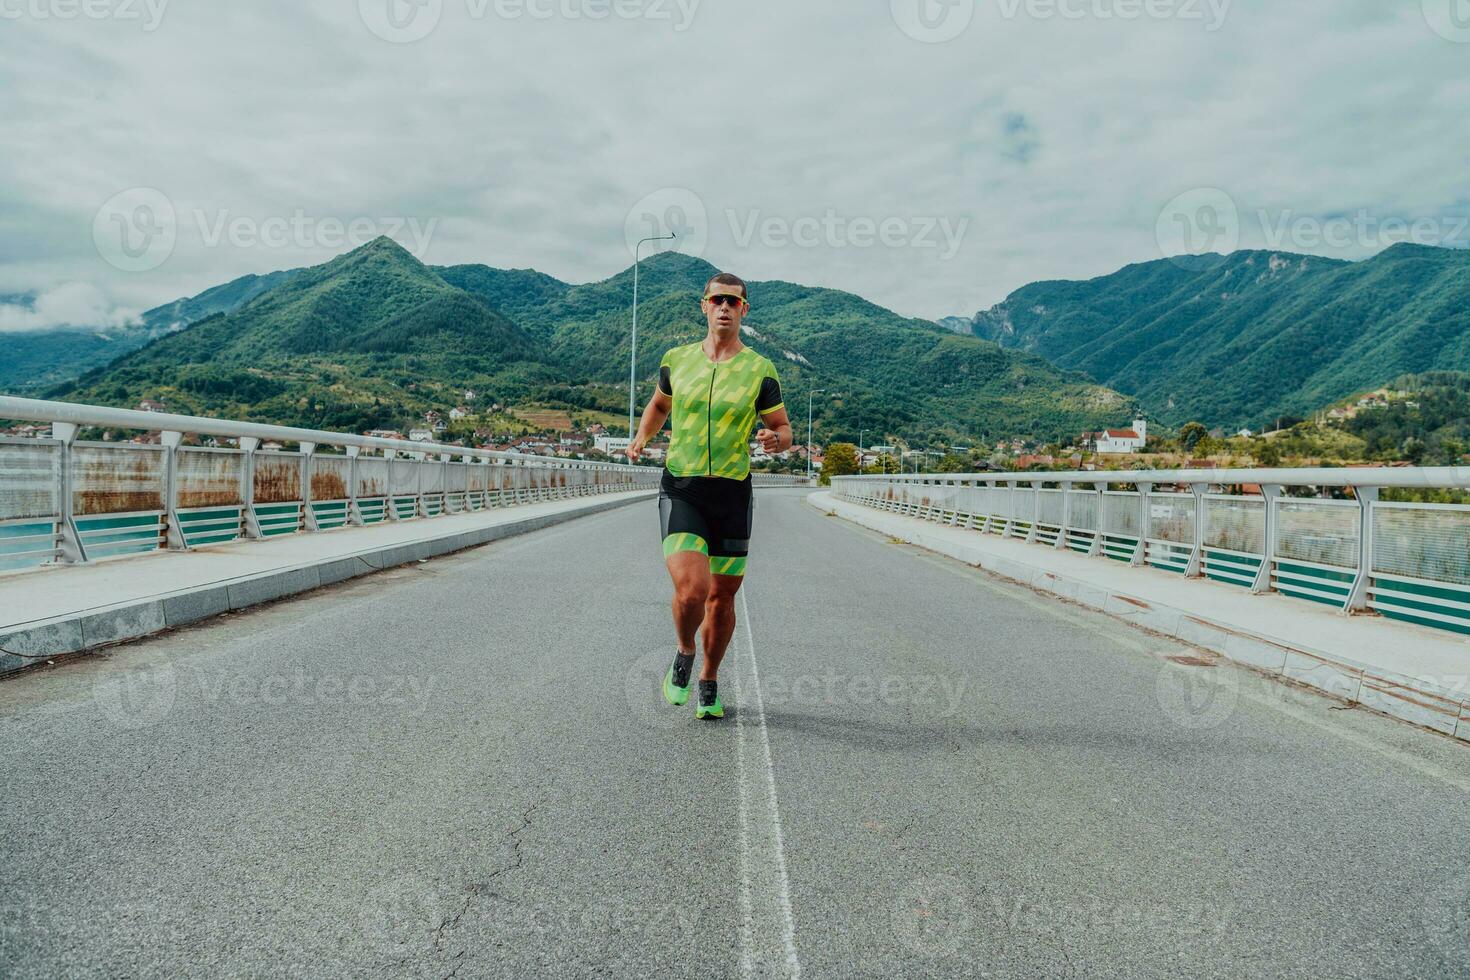 un athlète fonctionnement une marathon et en train de préparer pour le sien concours. photo de une marathon coureur fonctionnement dans un Urbain environnement